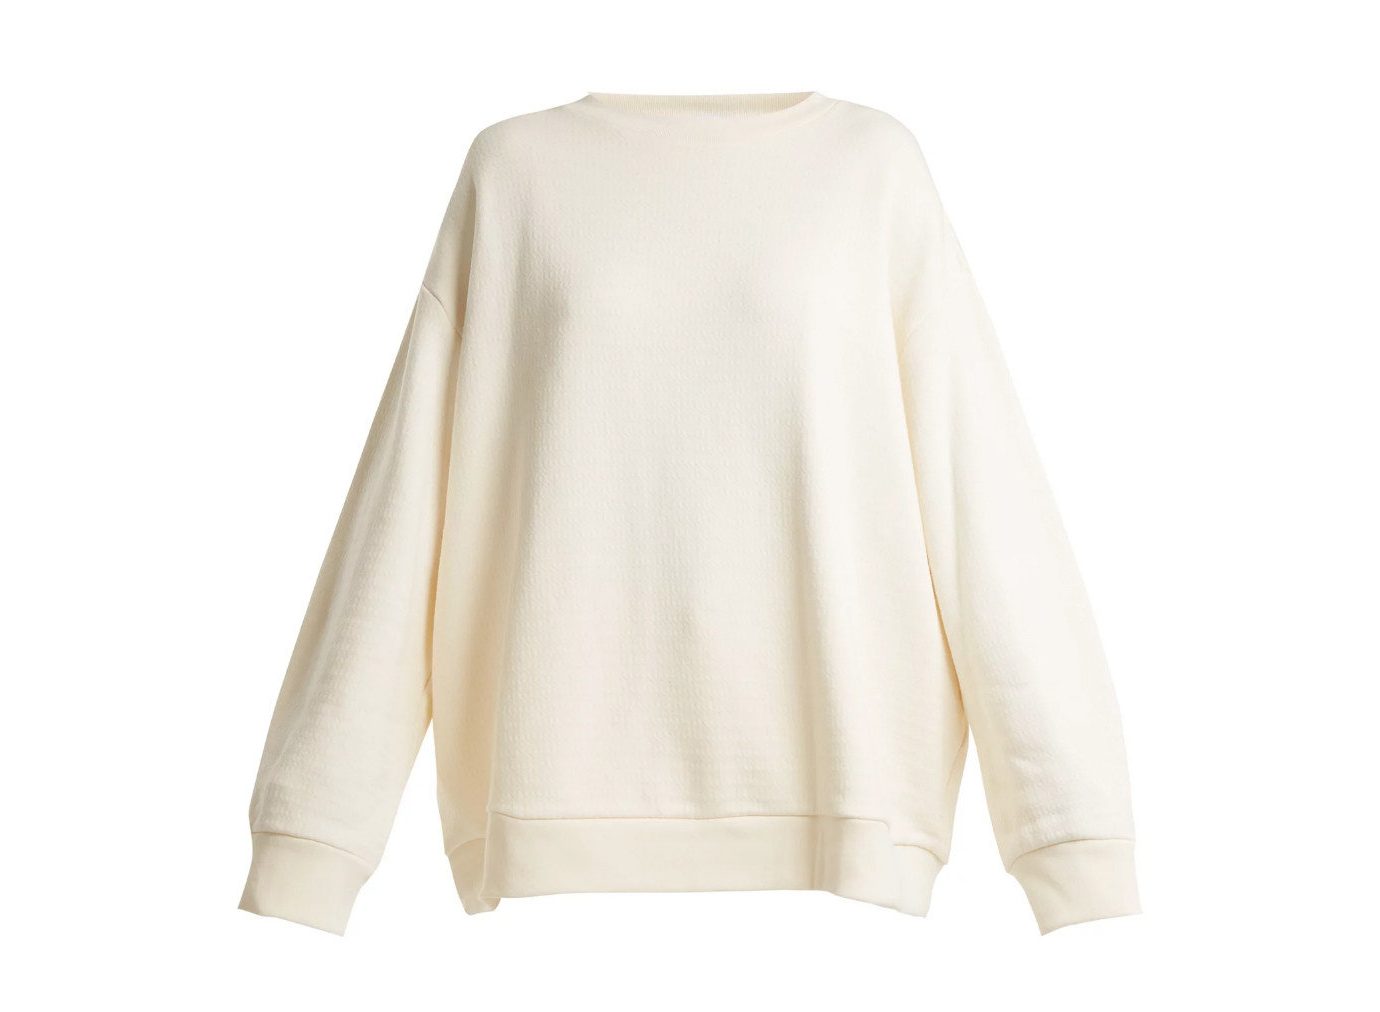 Style + Design Travel Shop sleeve shoulder neck sweater beige long sleeved t shirt